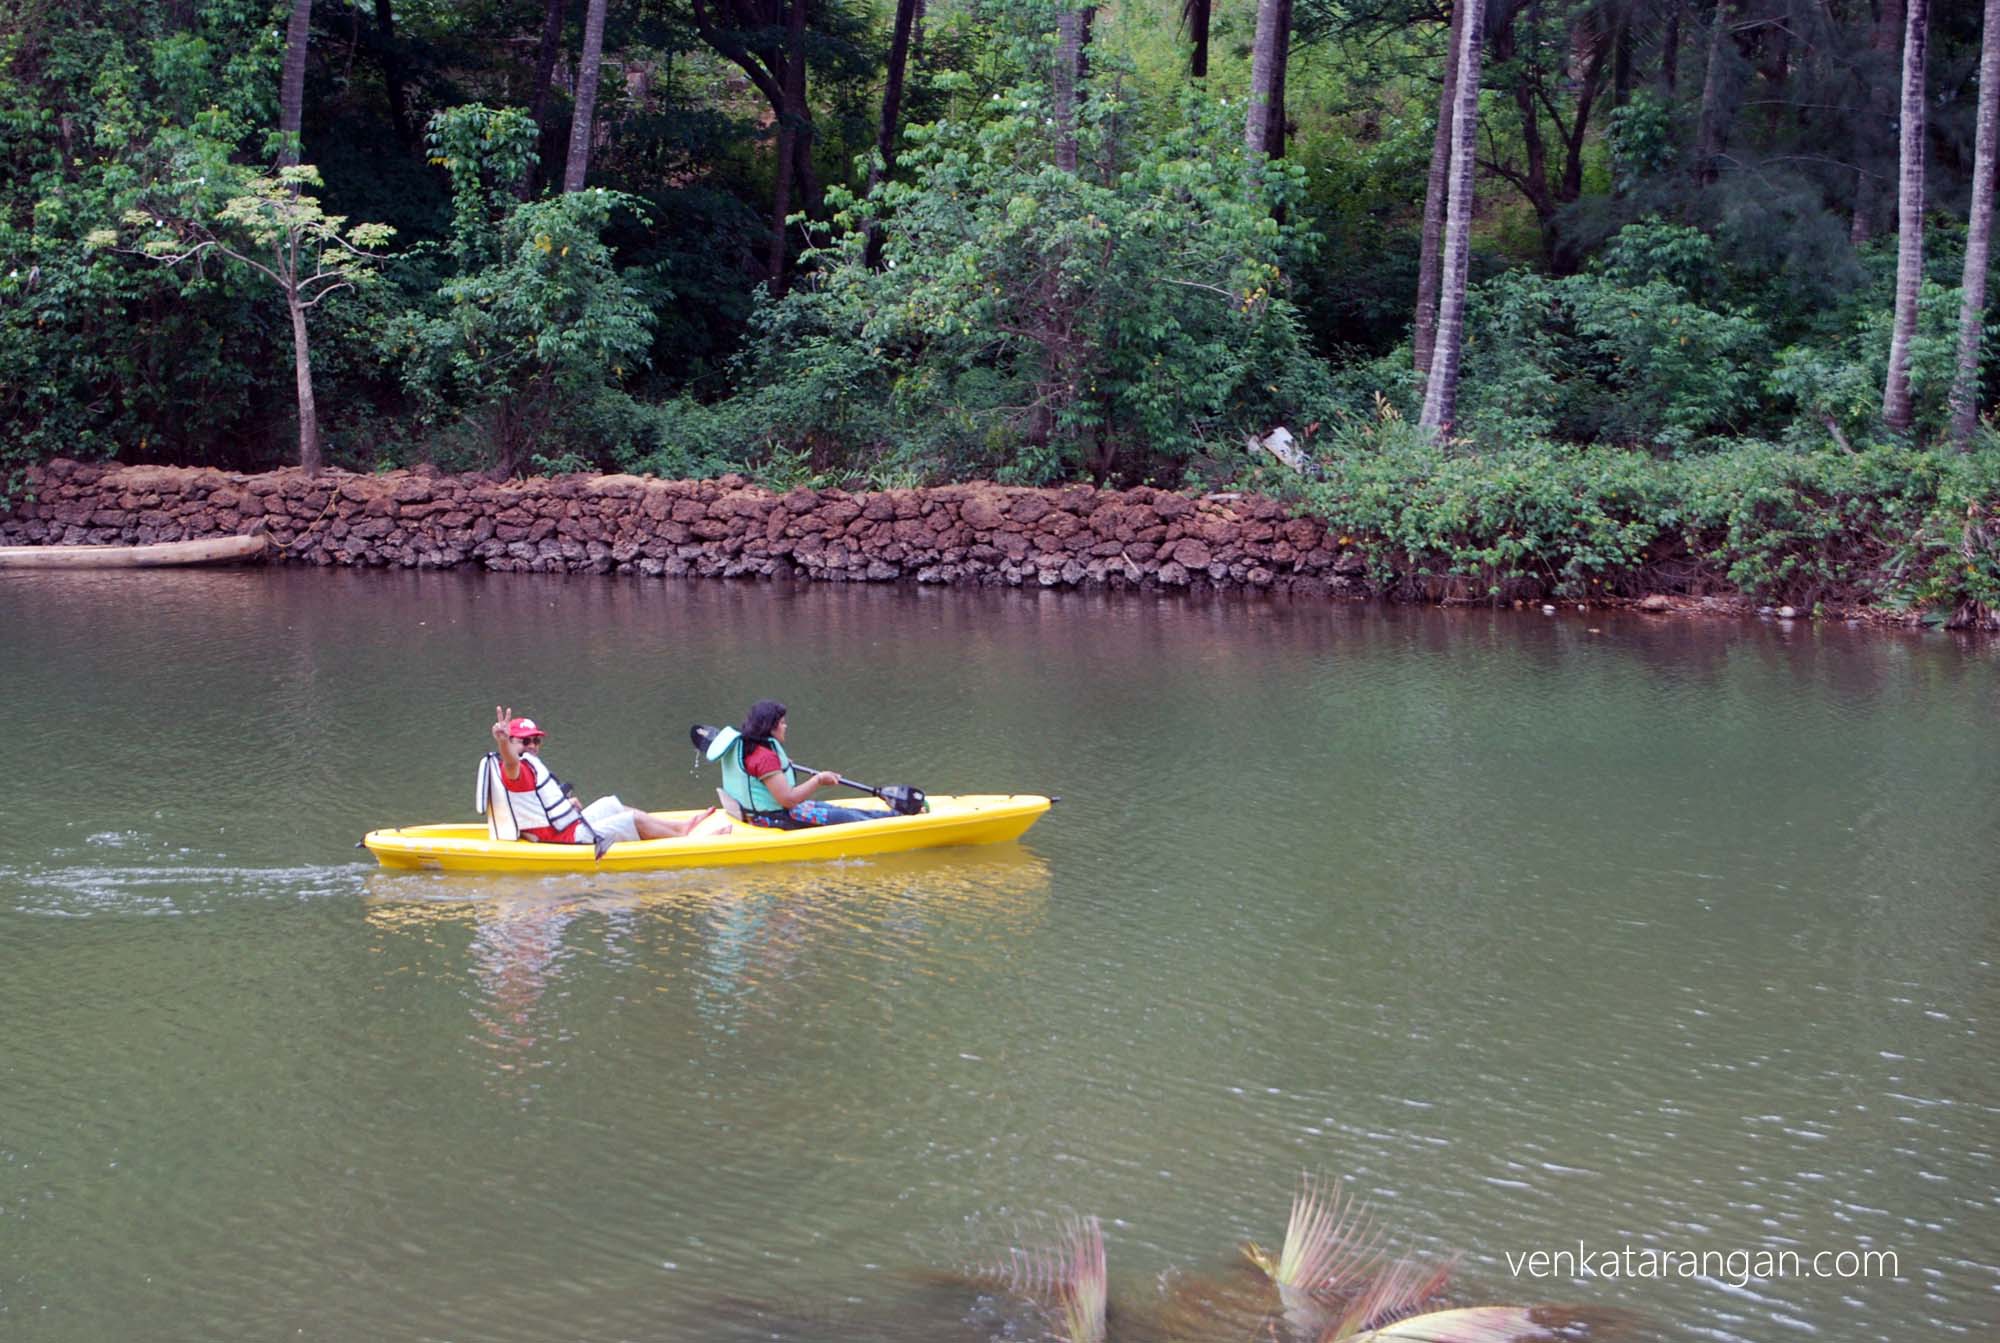 Rafting inside the waterways in the resort